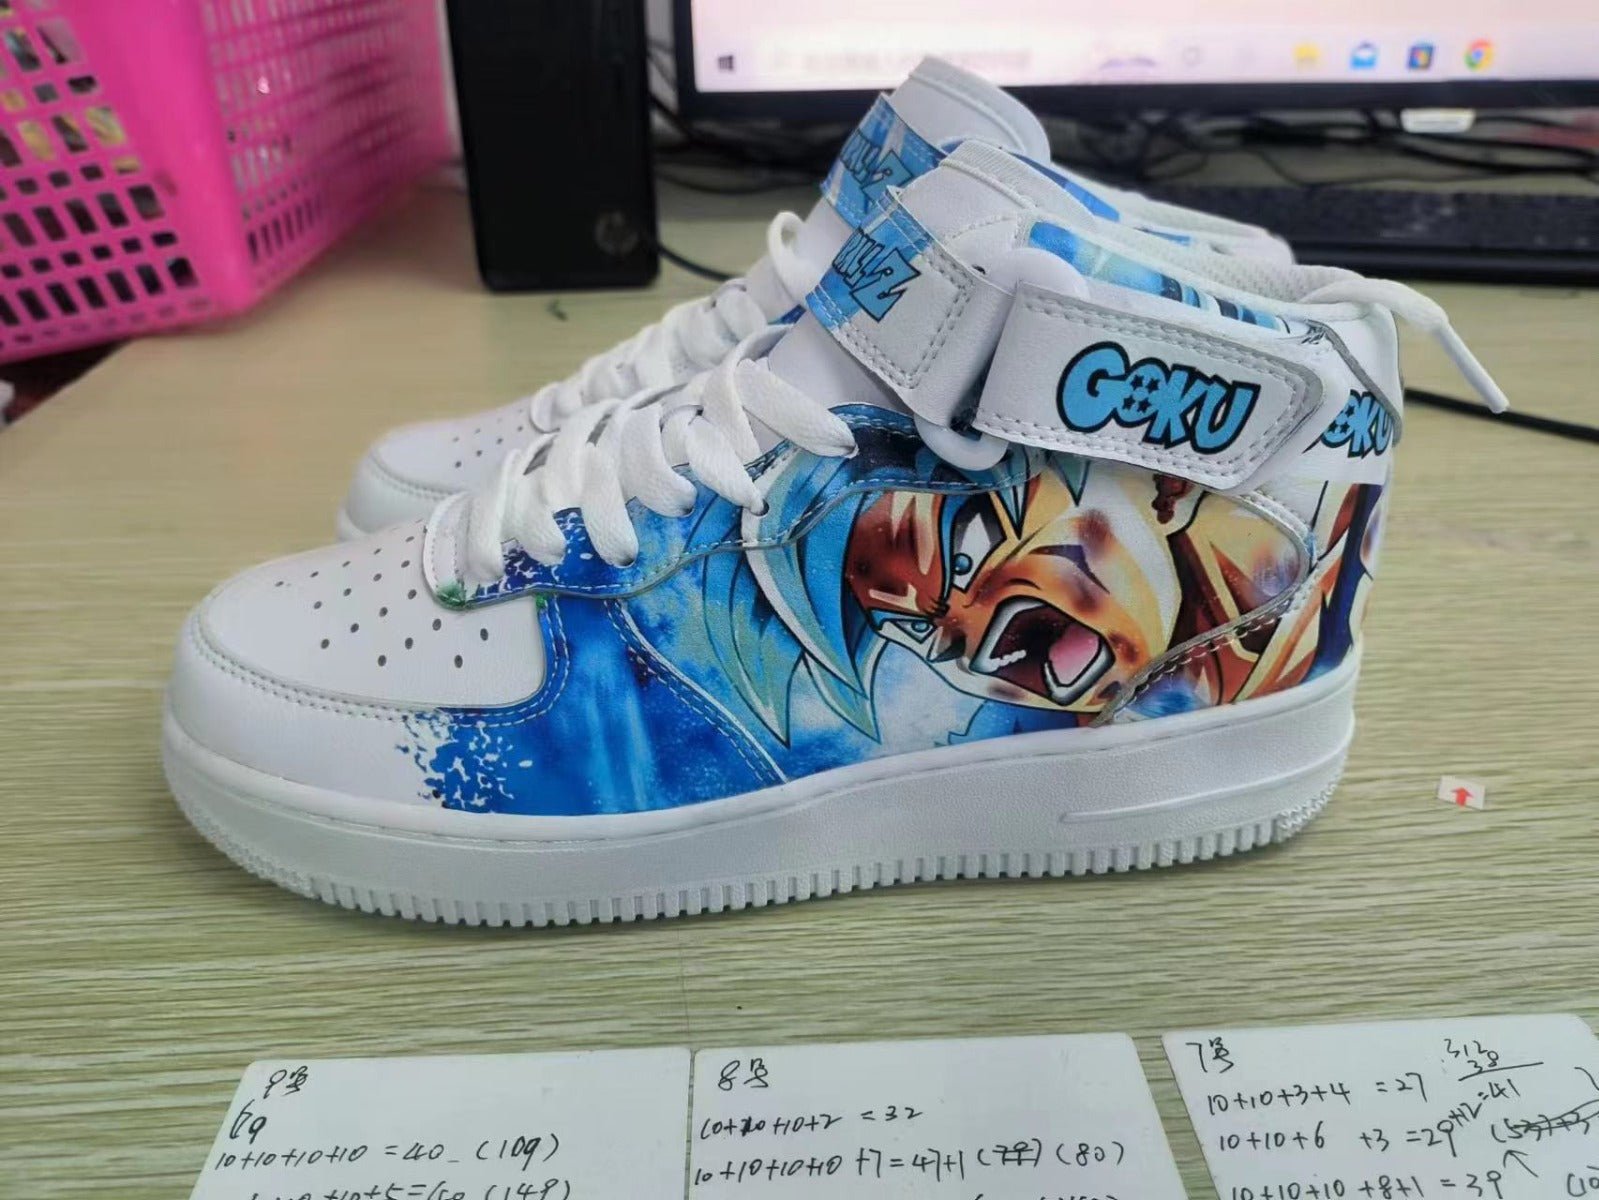 Chaussures - Dragon ball Goku Bleu M1-AstyleStore